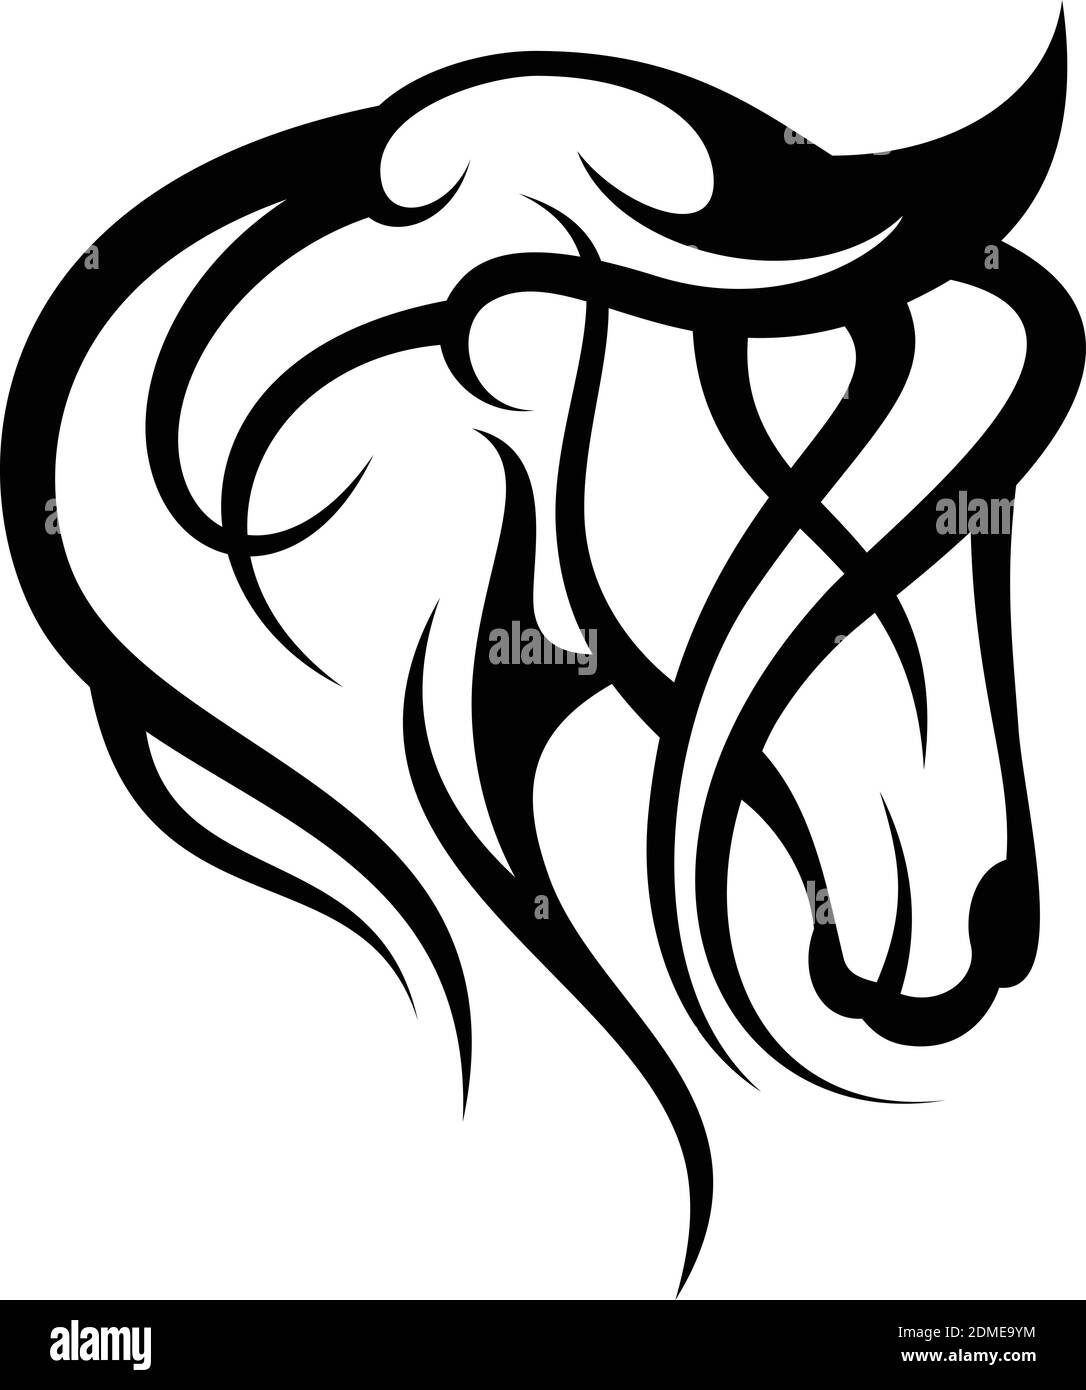 Kreative Silhouette Illustration Tribal Vektor Kopf von Pferd Design-Konzept. Einfache Tierwelt. Vektorgrafik EPS.8 EPS.10 Stock Vektor